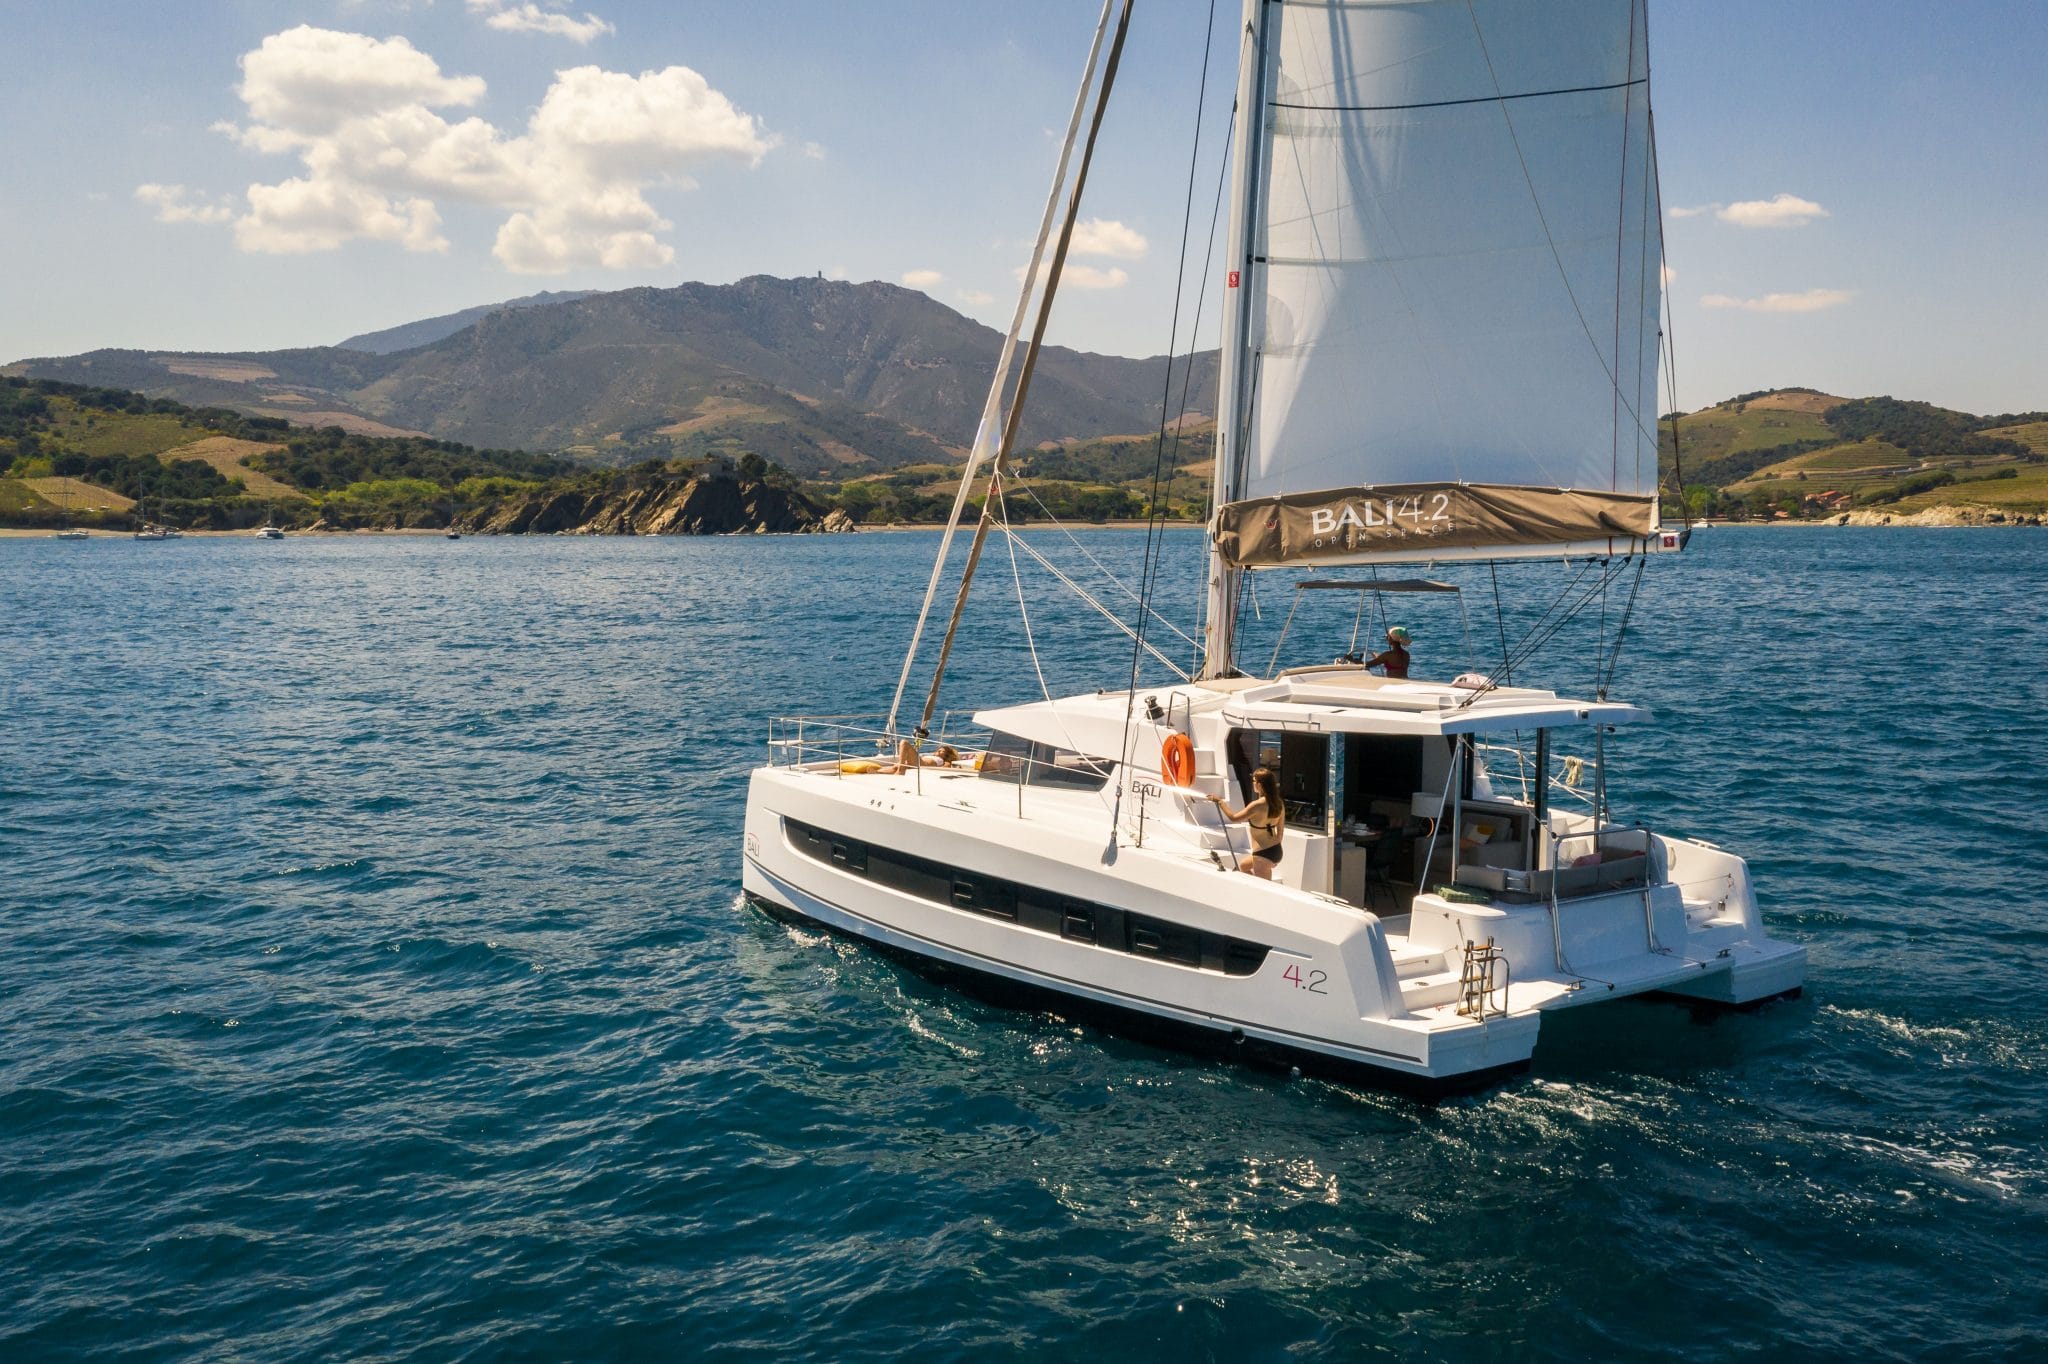 Bali 4.2 - Yacht Charter Ragusa & Boat hire in Italy Sicily Ragusa Marina di Ragusa 6